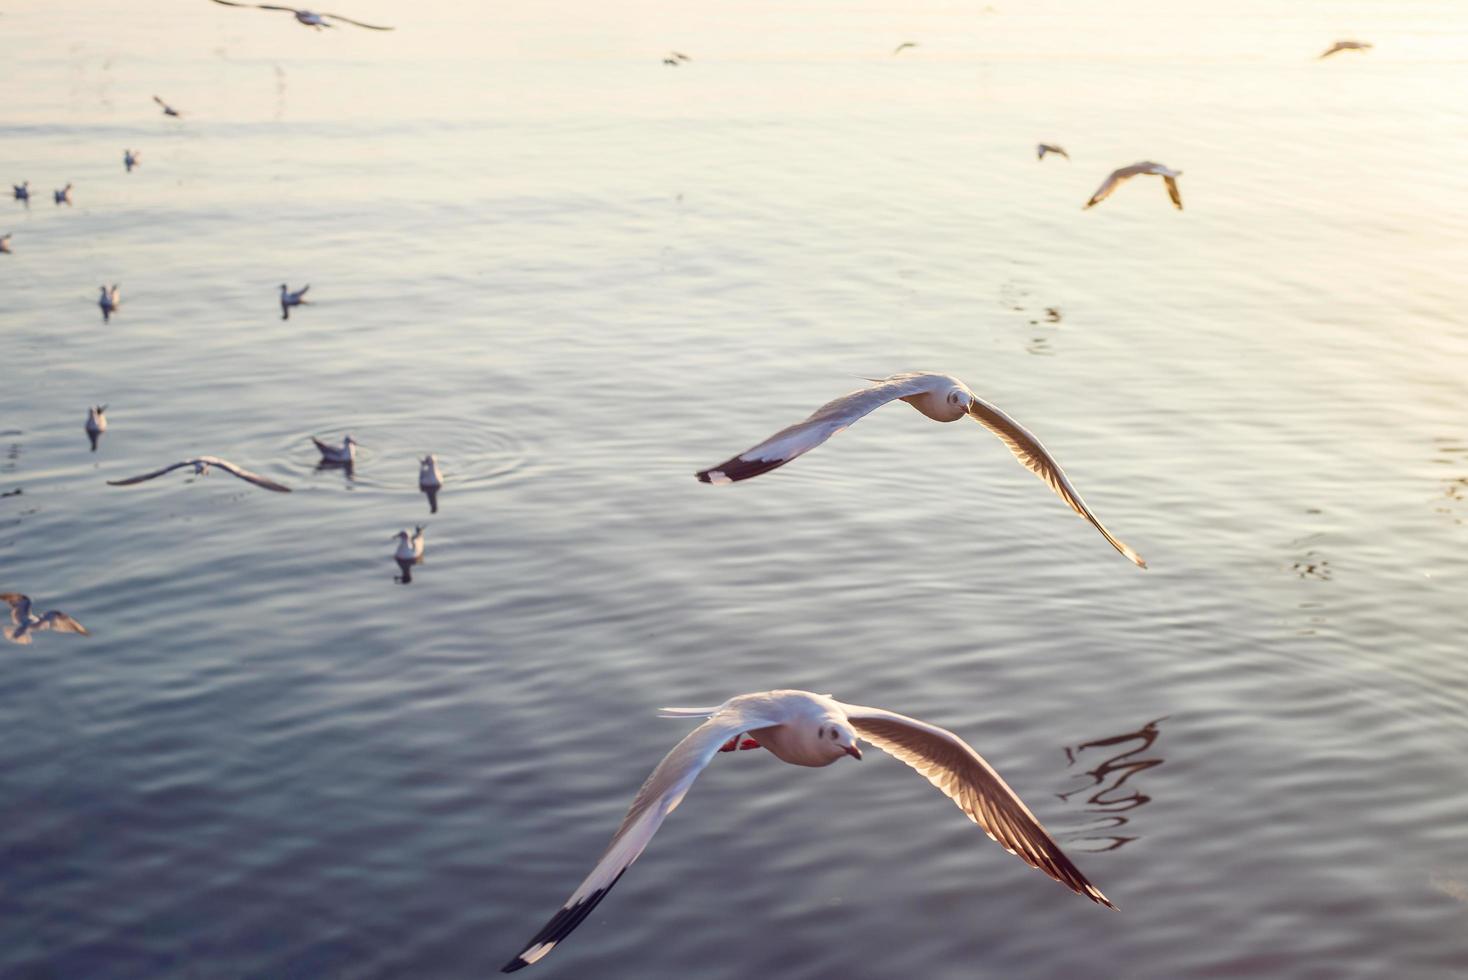 gaviotas volando en el mar al atardecer foto